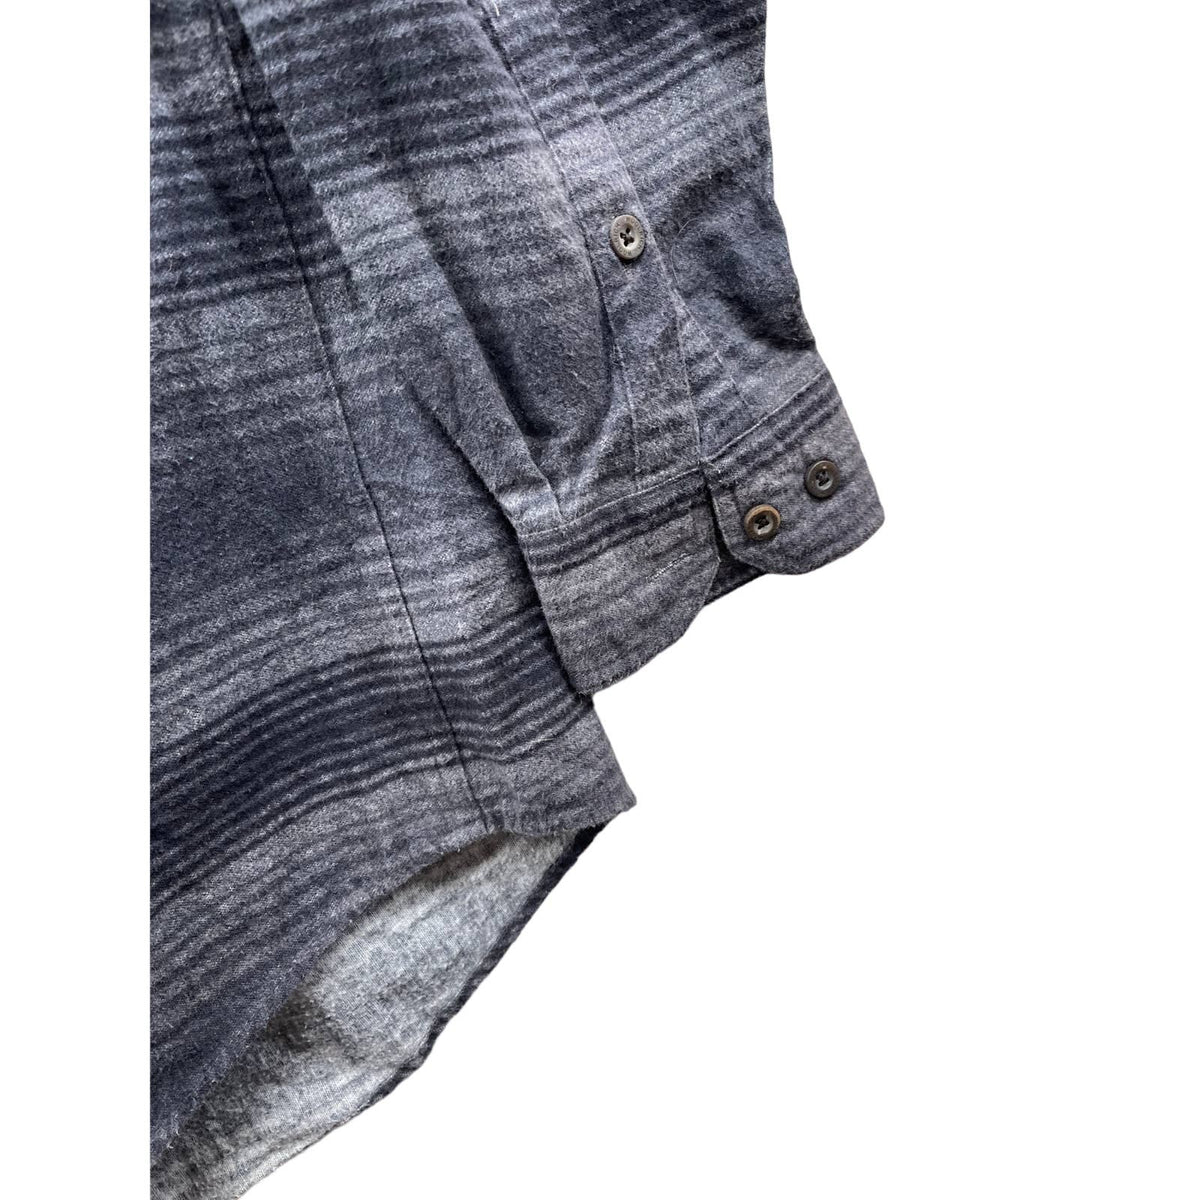 Vintage Woolrich Men's Southwest Aztec Striped Flannel Button Down L/S Shirt